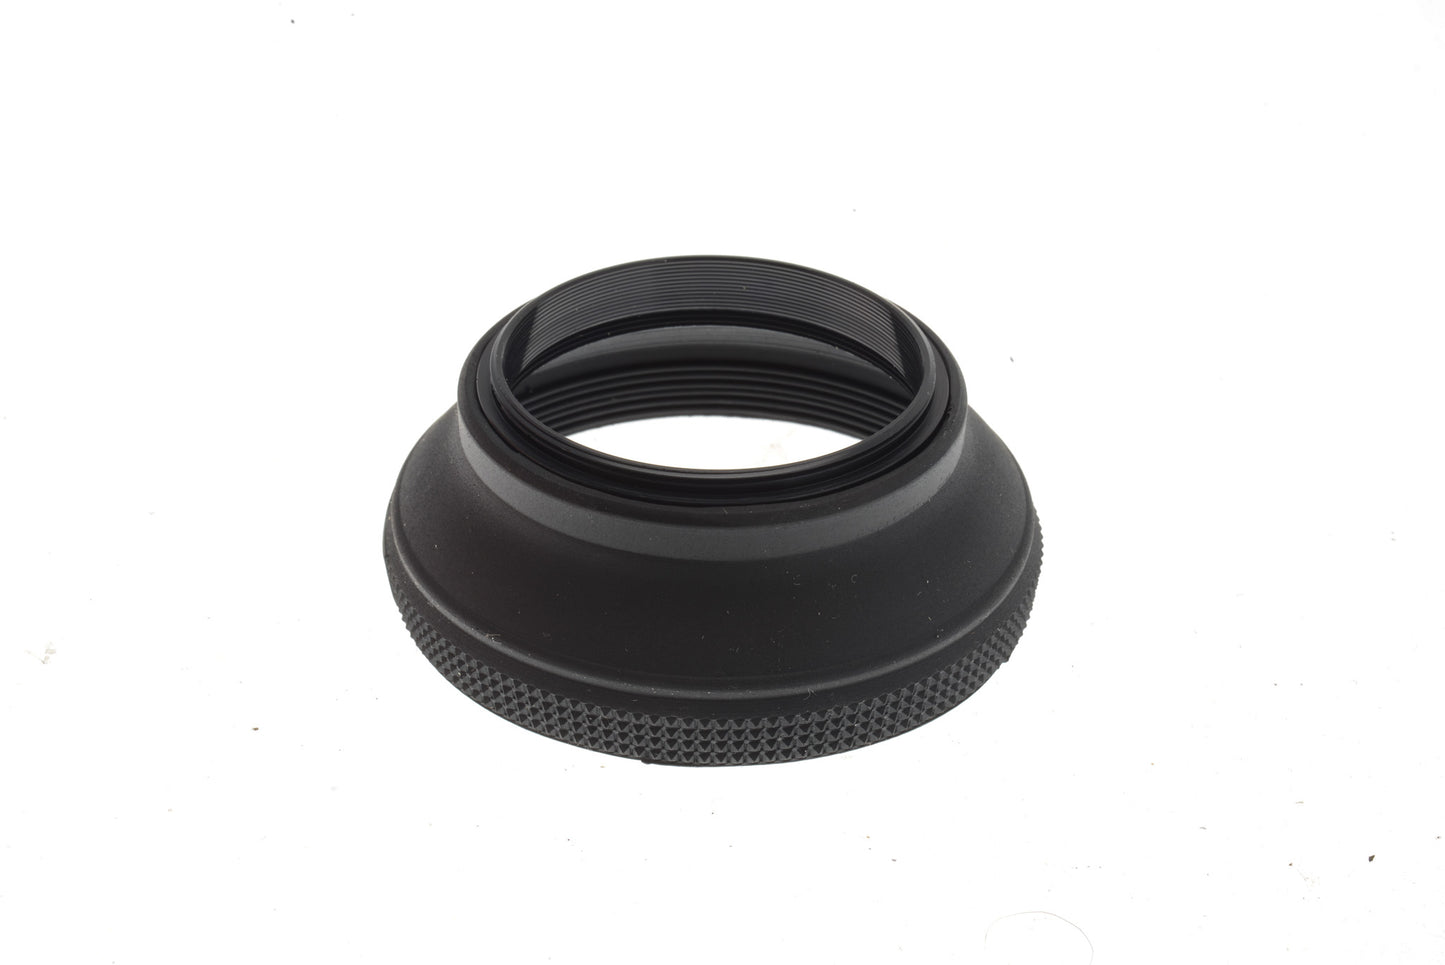 Aroma 48mm Rubber Lens Hood